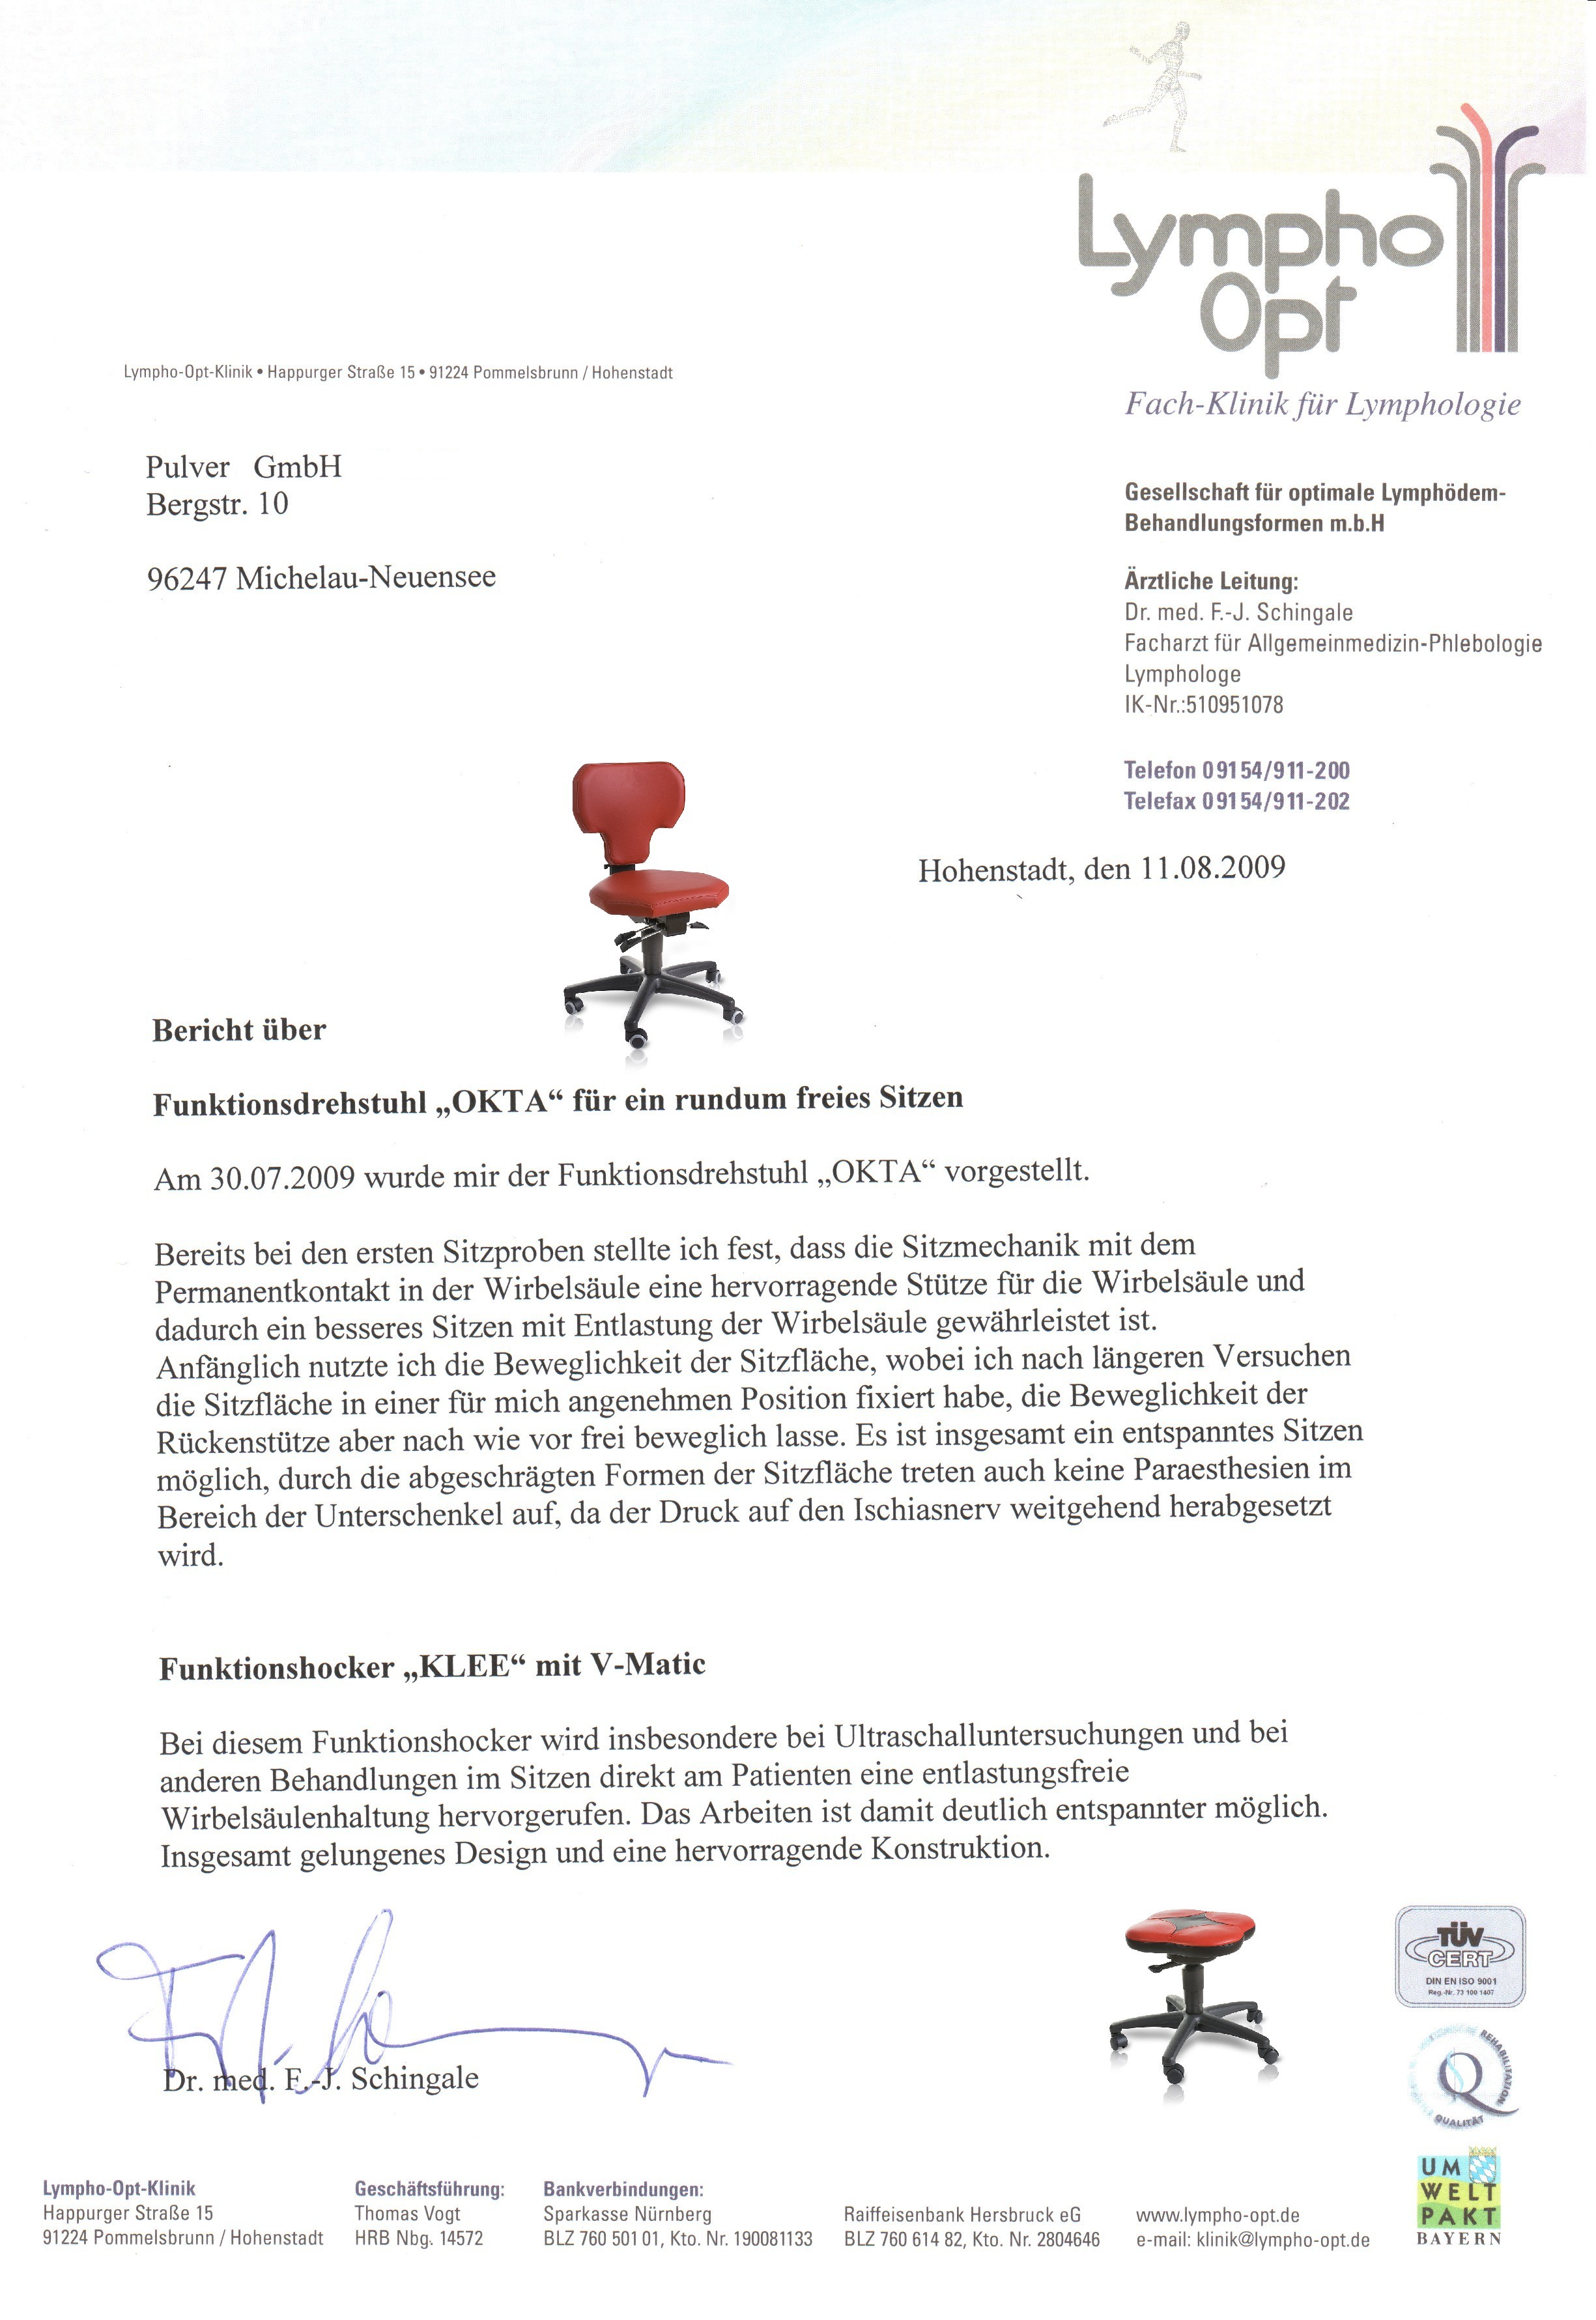 Pulver GmbH Bericht Okta und Klee mit Bildern